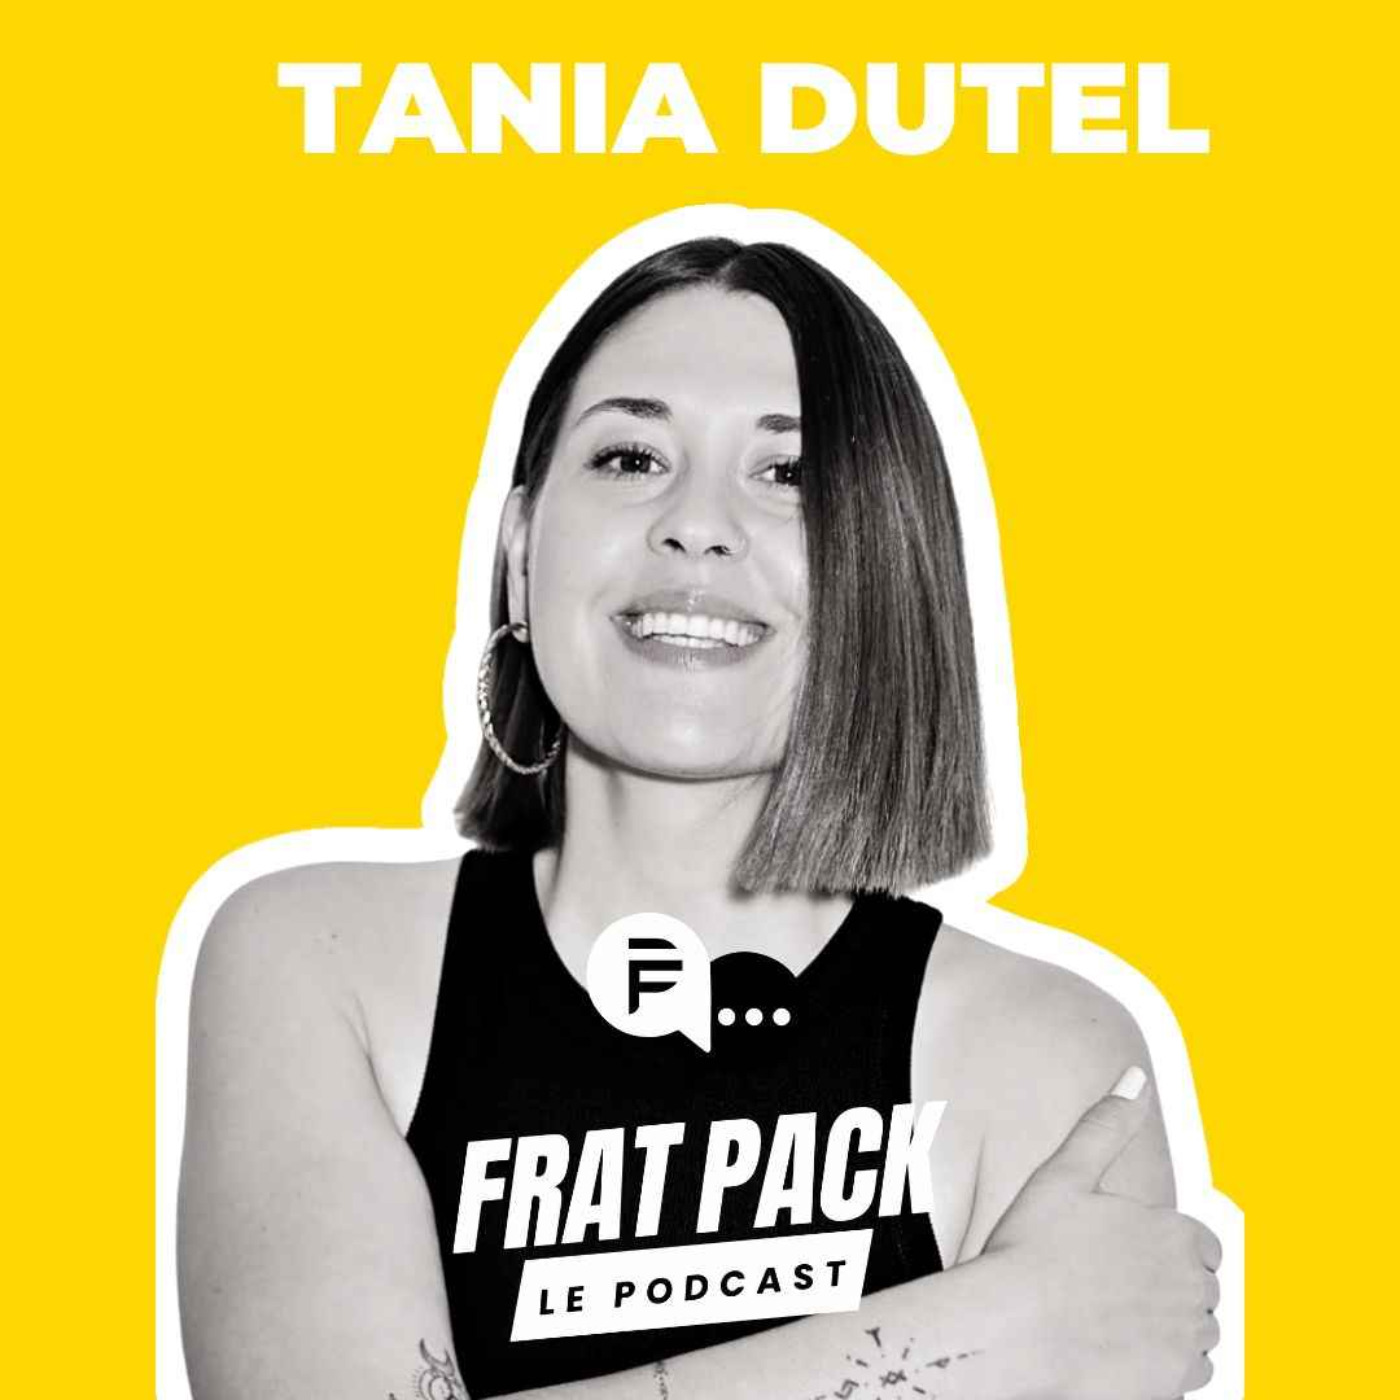 S02E03 Frat Pack avec Tania Dutel